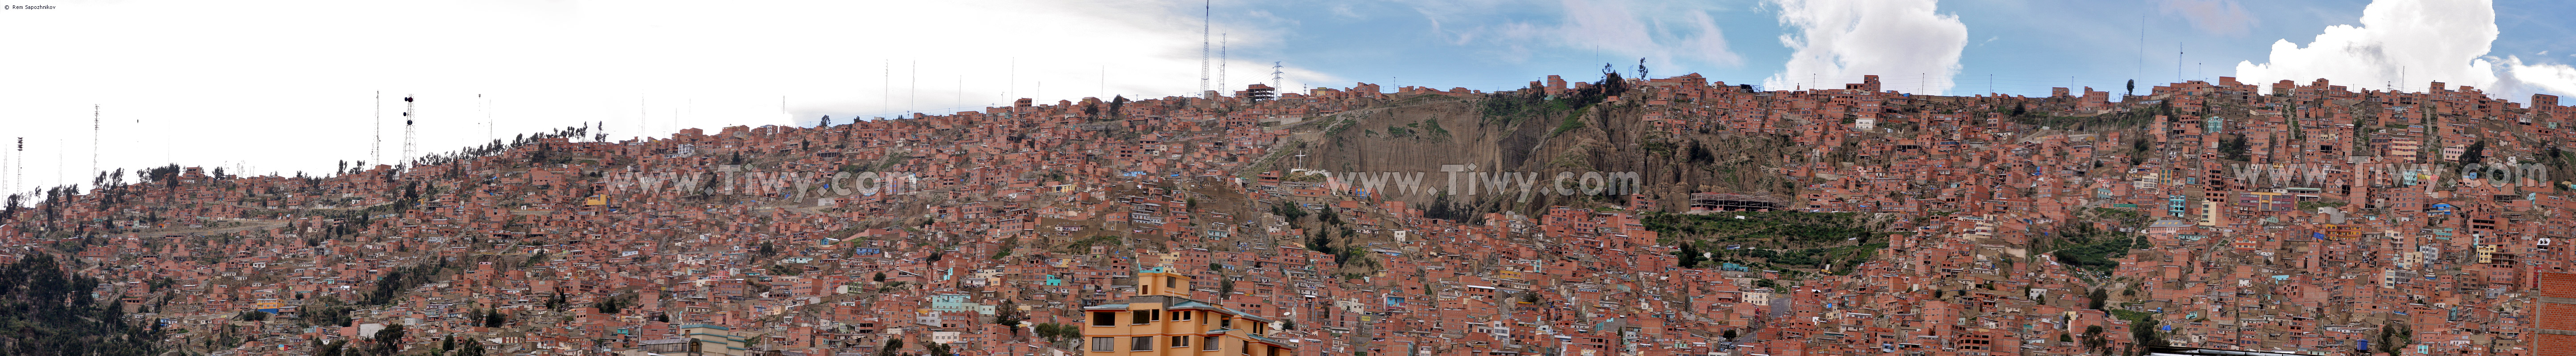 En las laderas termina La Paz y comienza El Alto